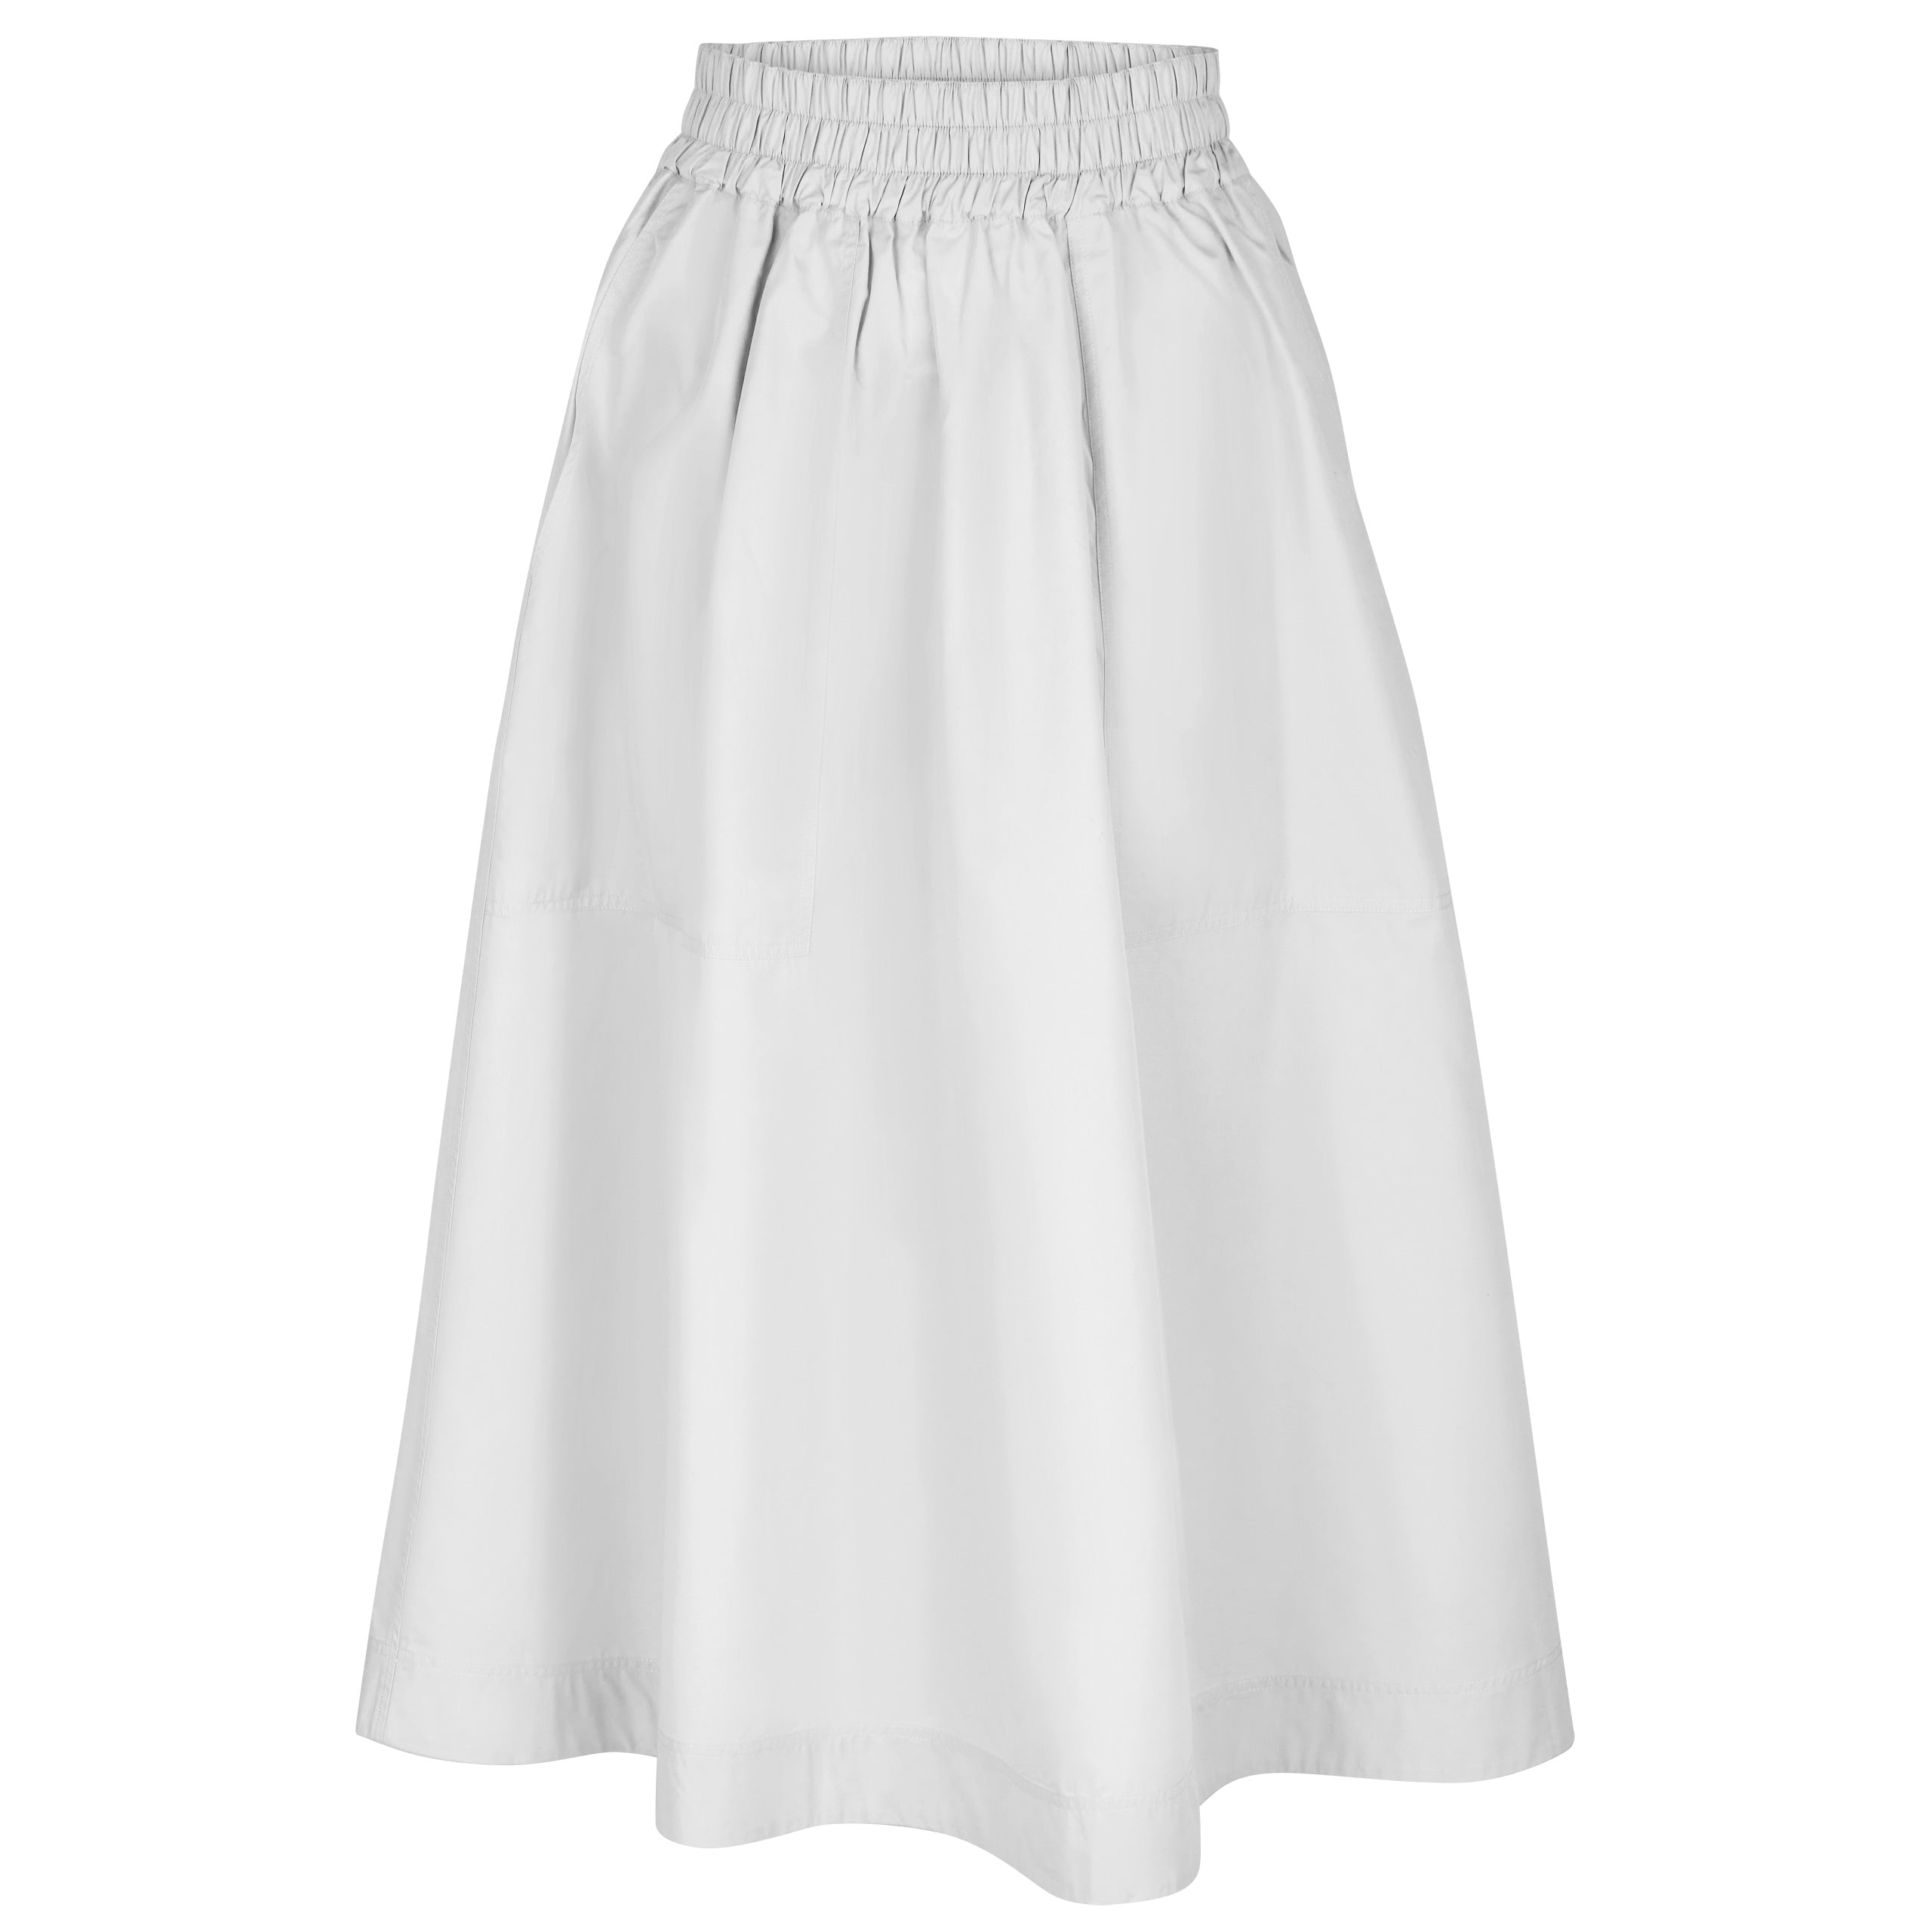 Skirt Code 45 white 